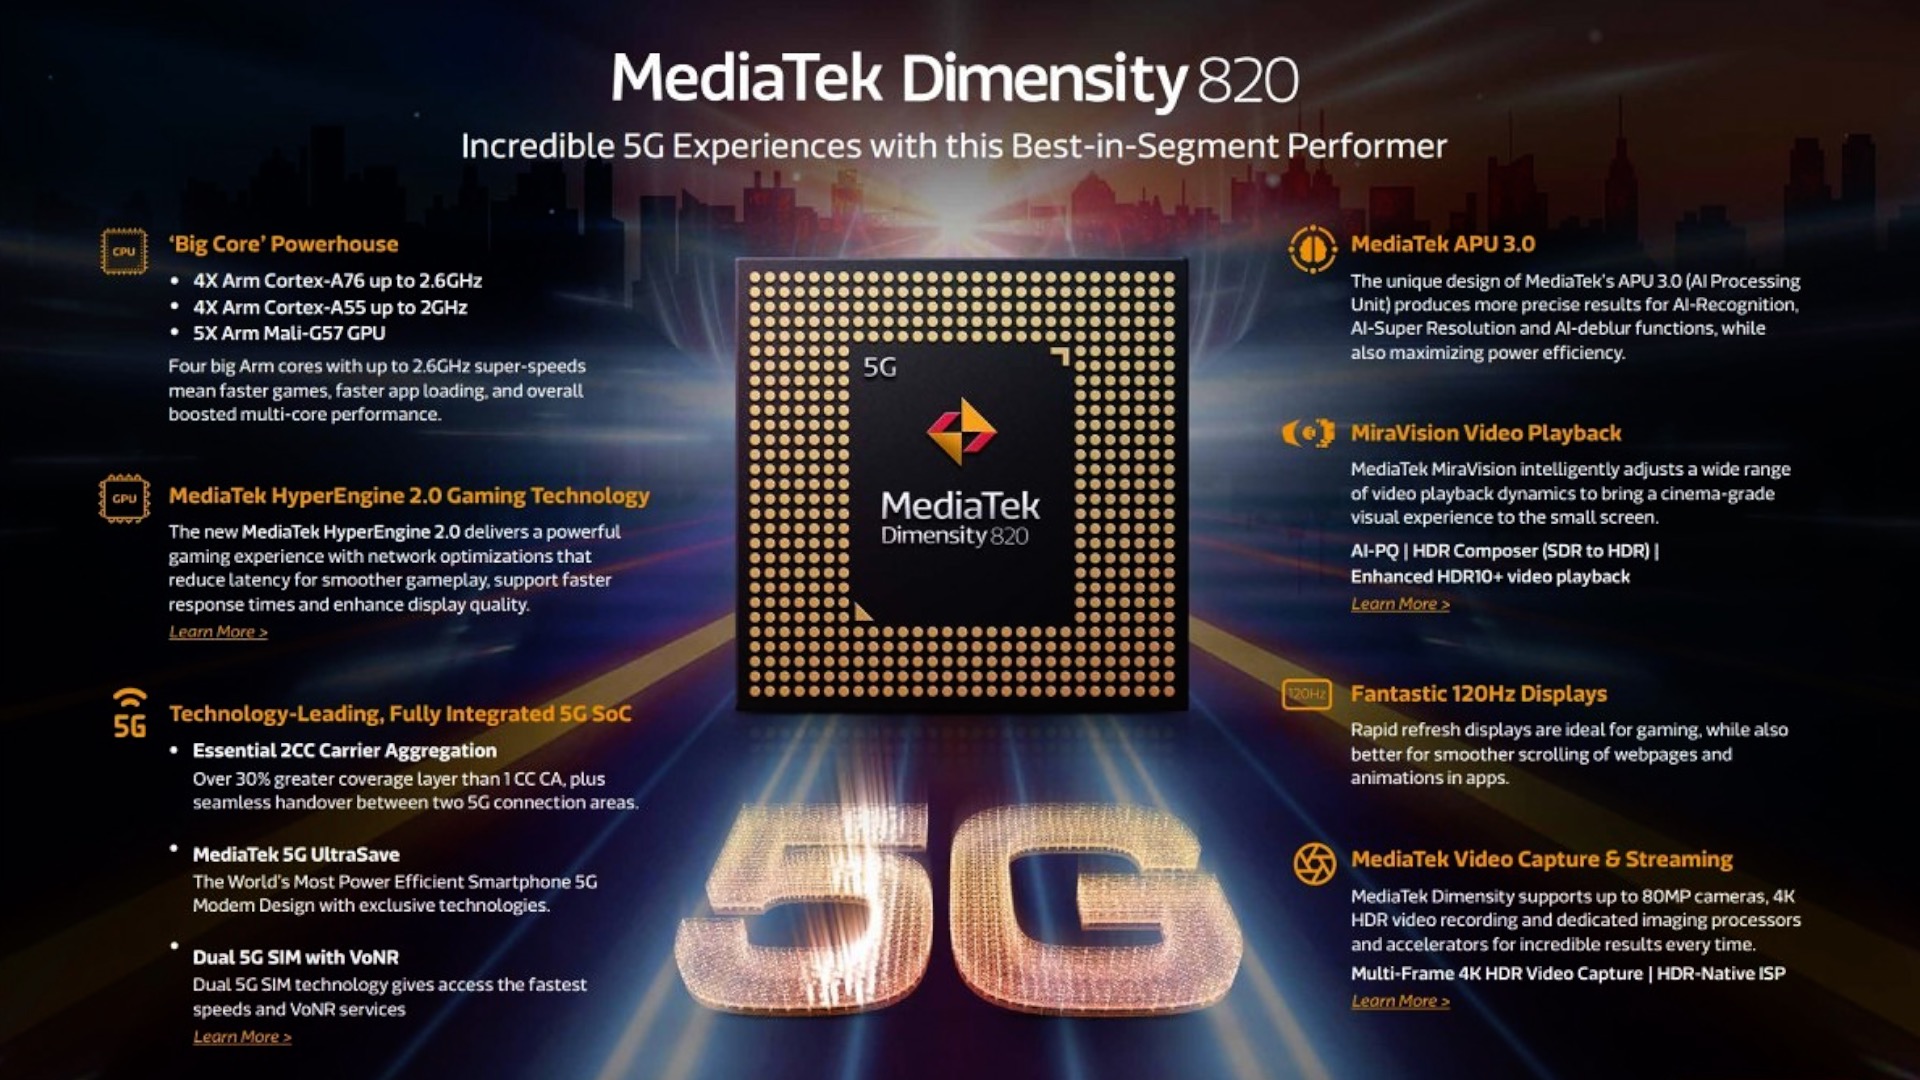 mediatek dimensity 820